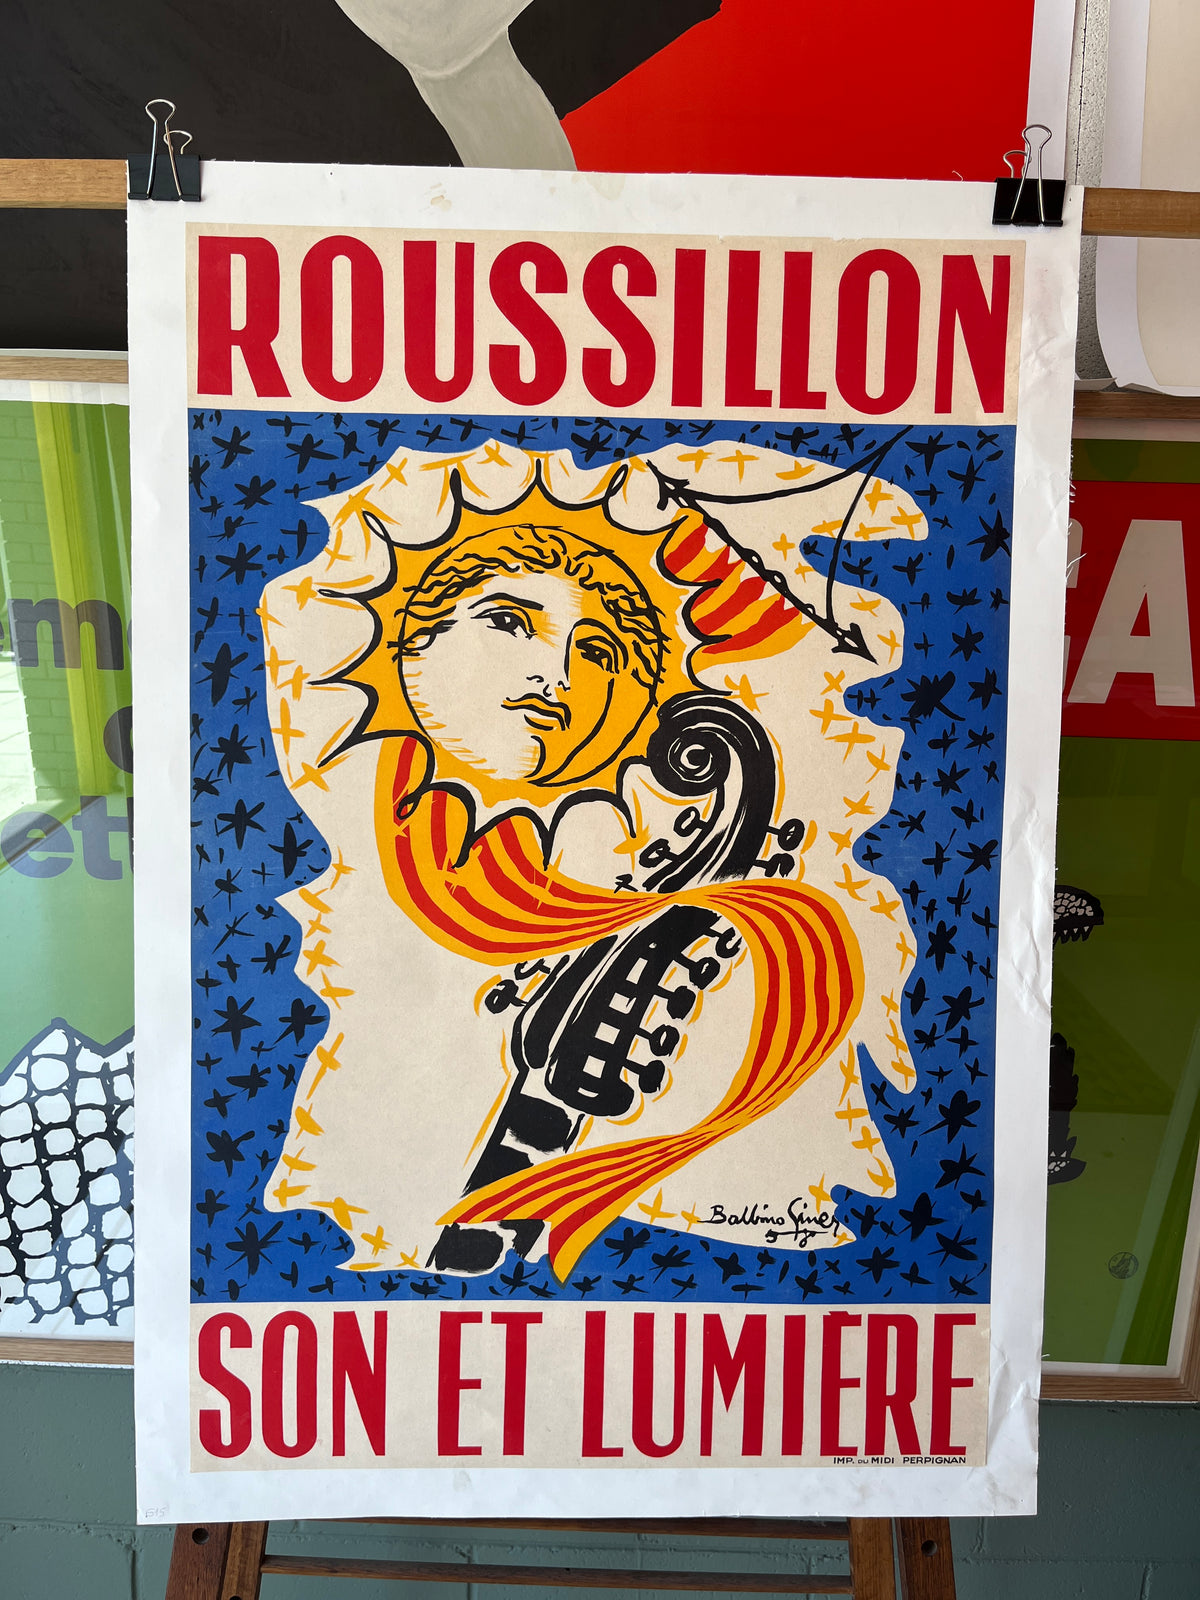 Rousillon by Balbino Giner